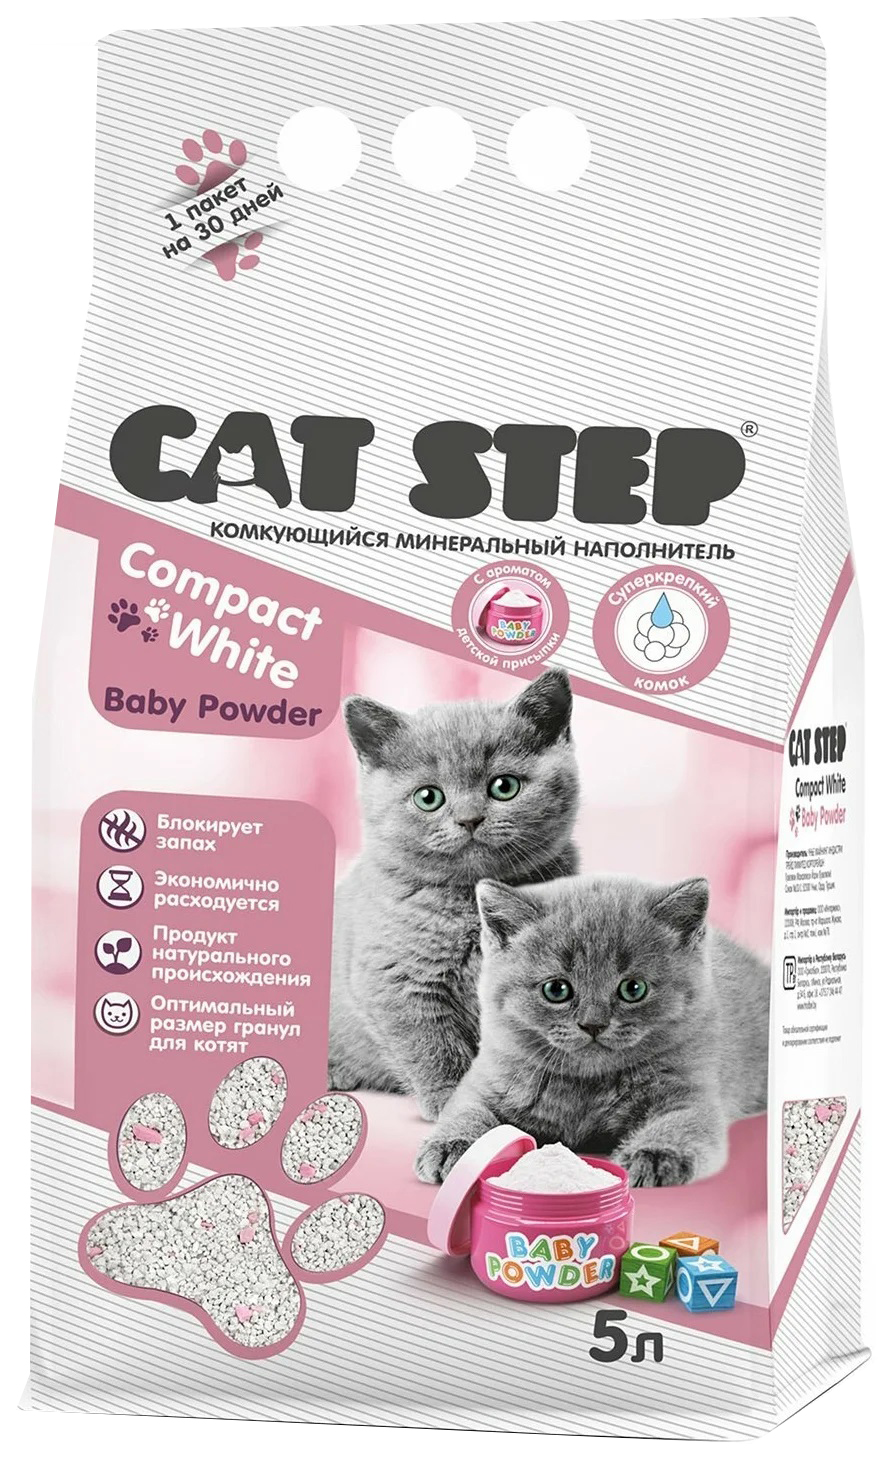 Наполнитель комкующийся минеральный для котят Cat step compact white baby powder 5 л